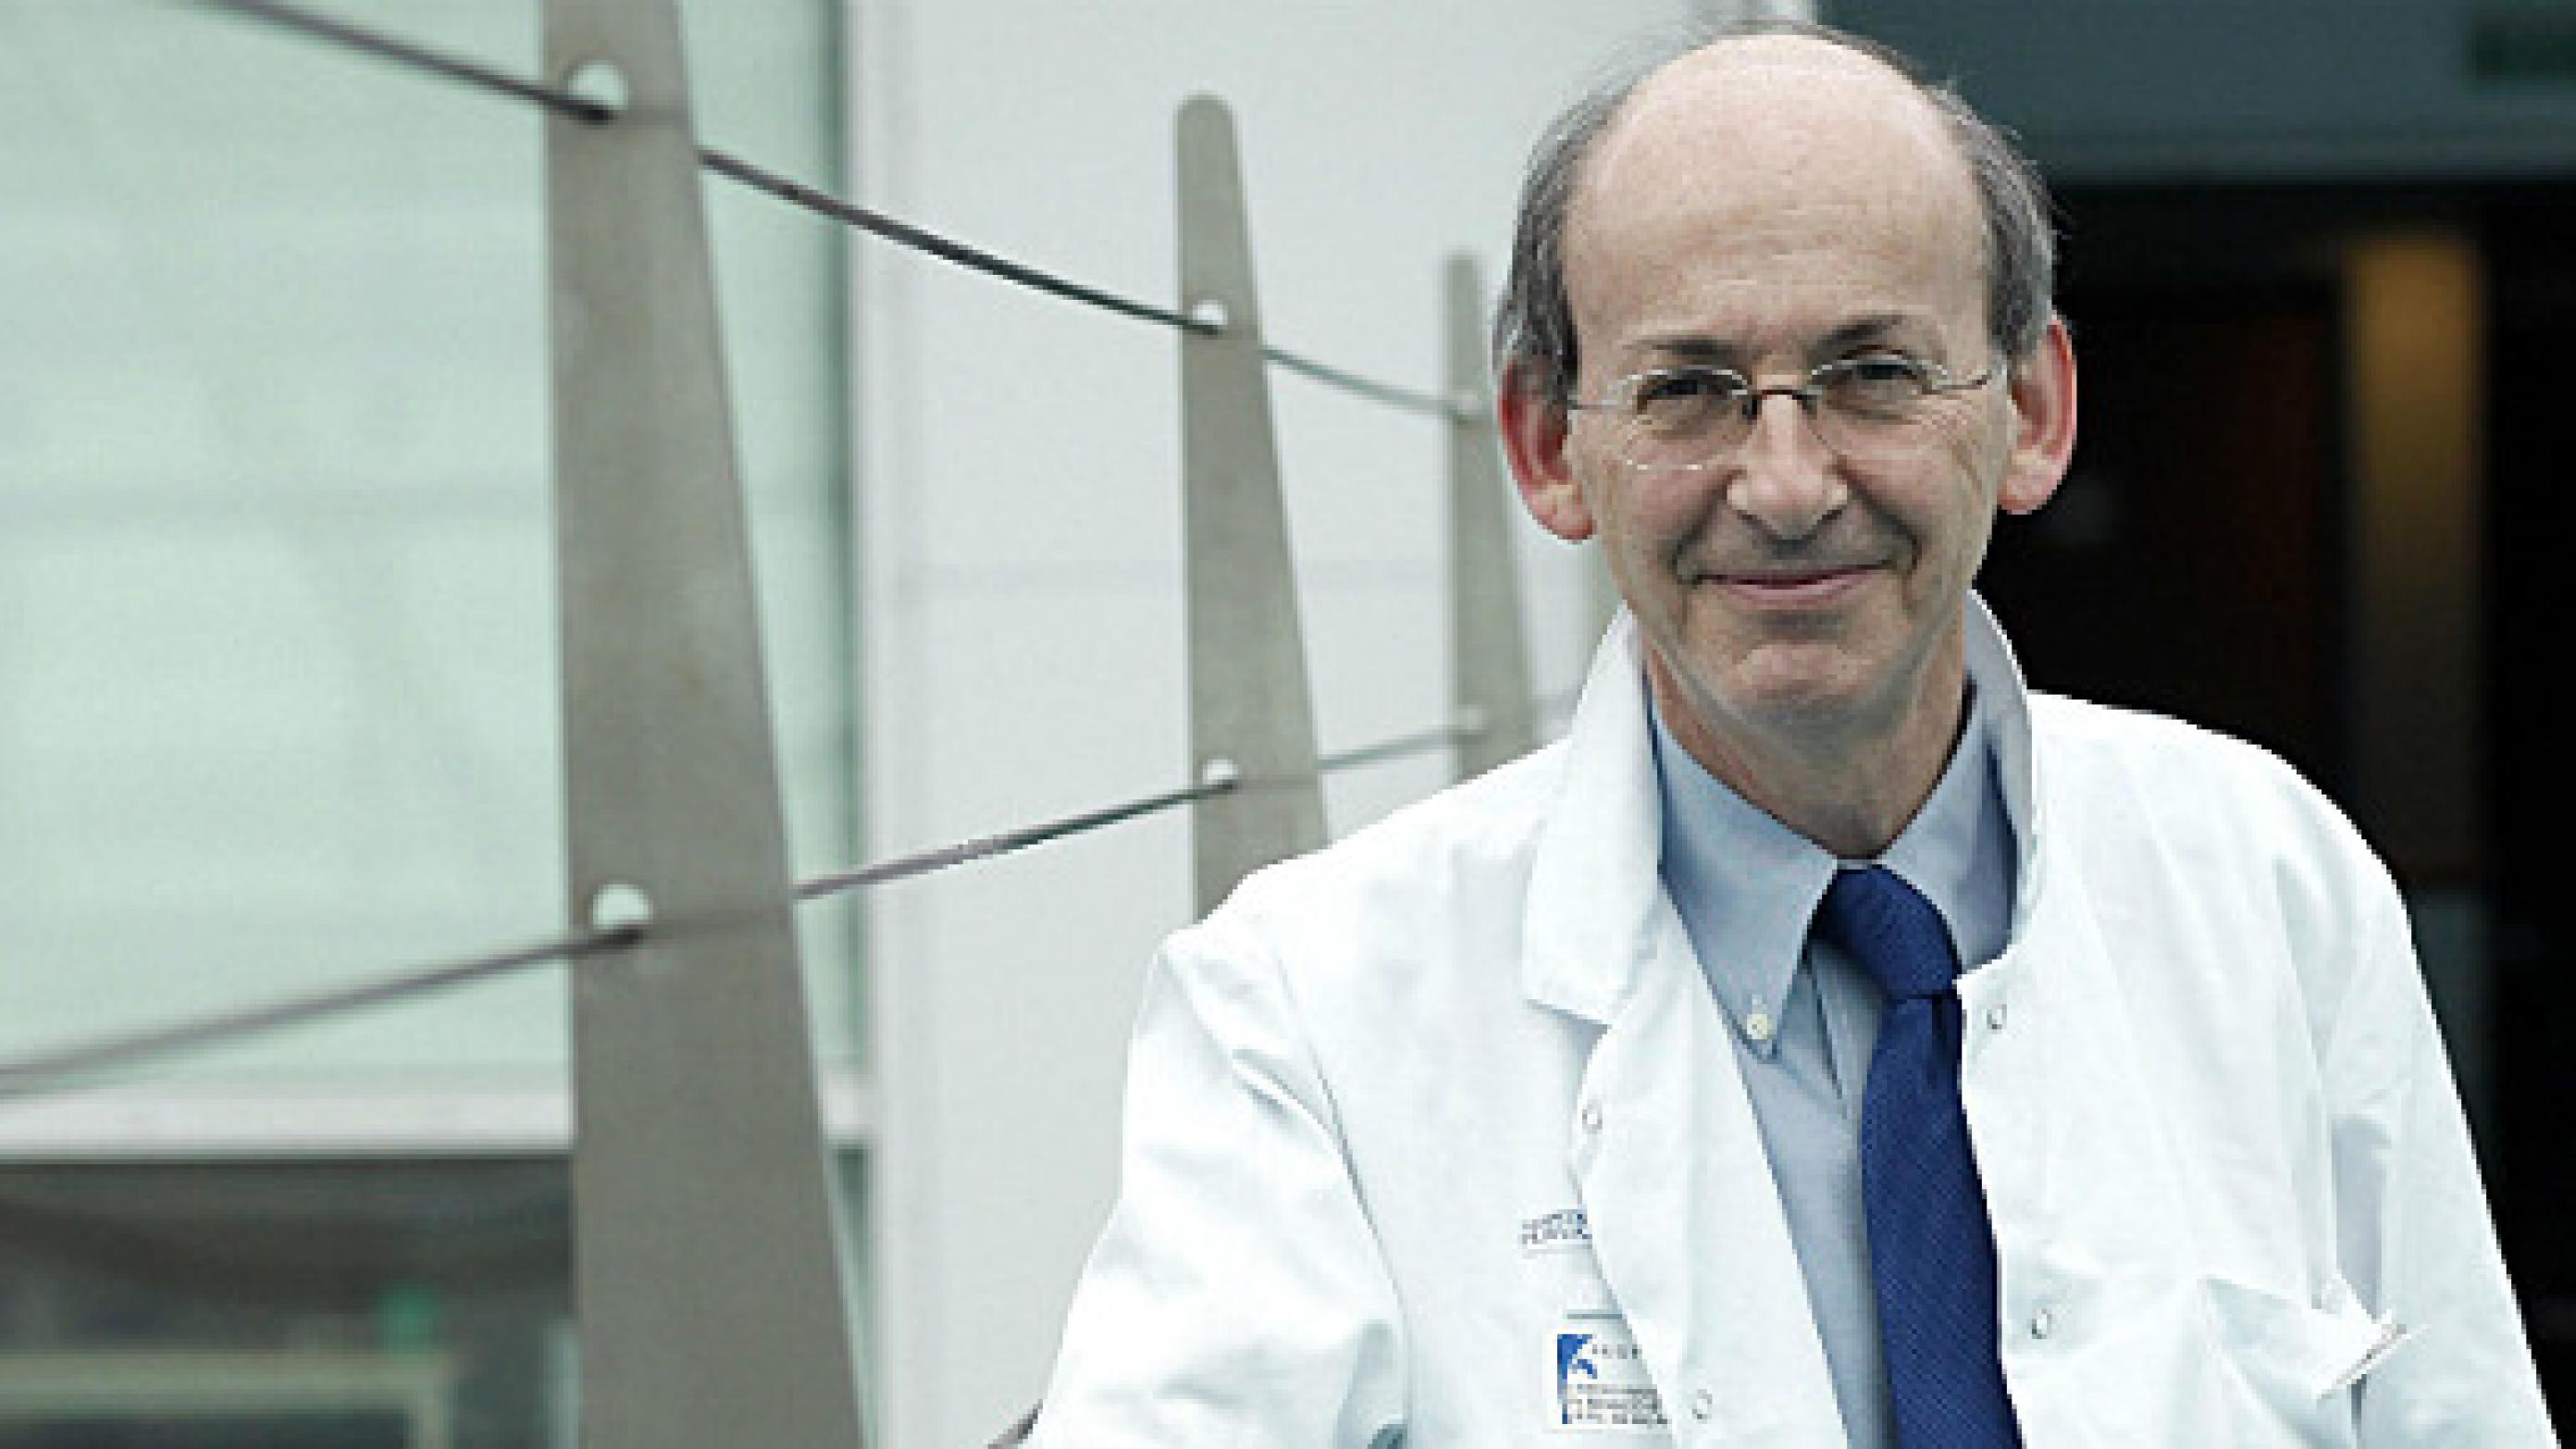 Philippe Menasché er professor og hjertekirurg på Georges Pompidou hospitalet i Paris. Han er chef for en ny enhed, som skal tiltrække udenlandske patienter til hospitalet. 